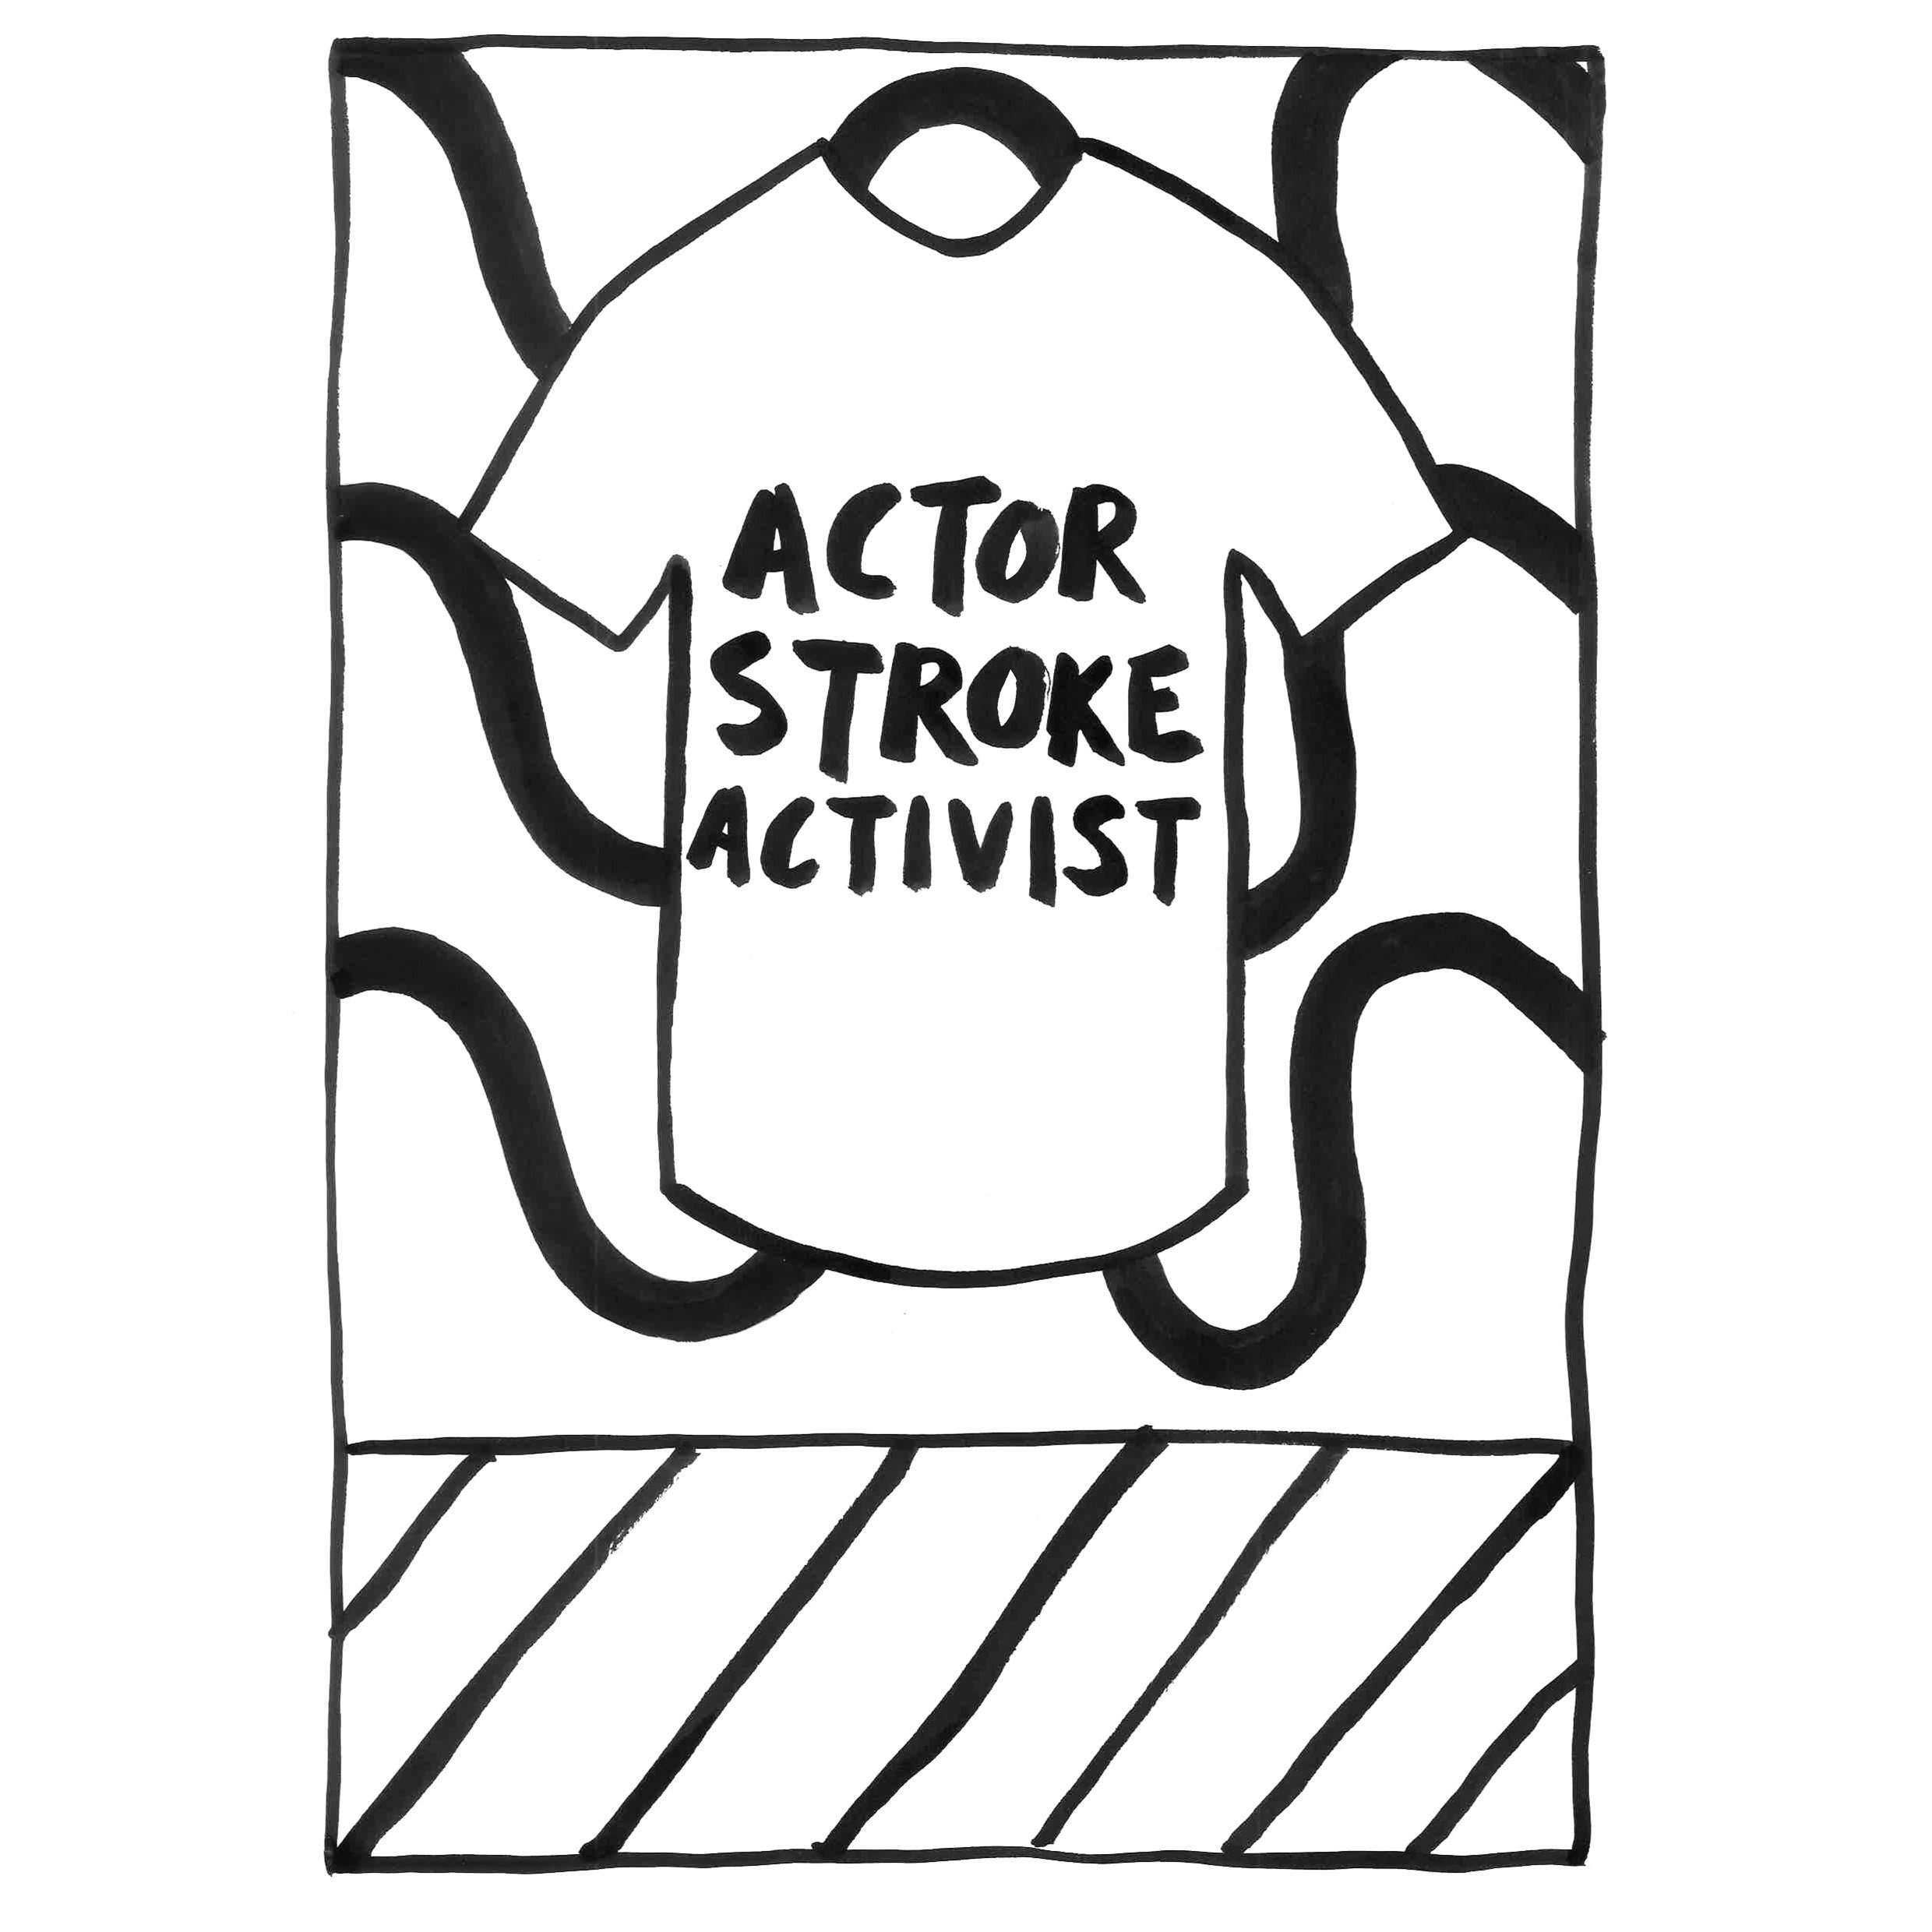 Actor Stroke Activist.jpg